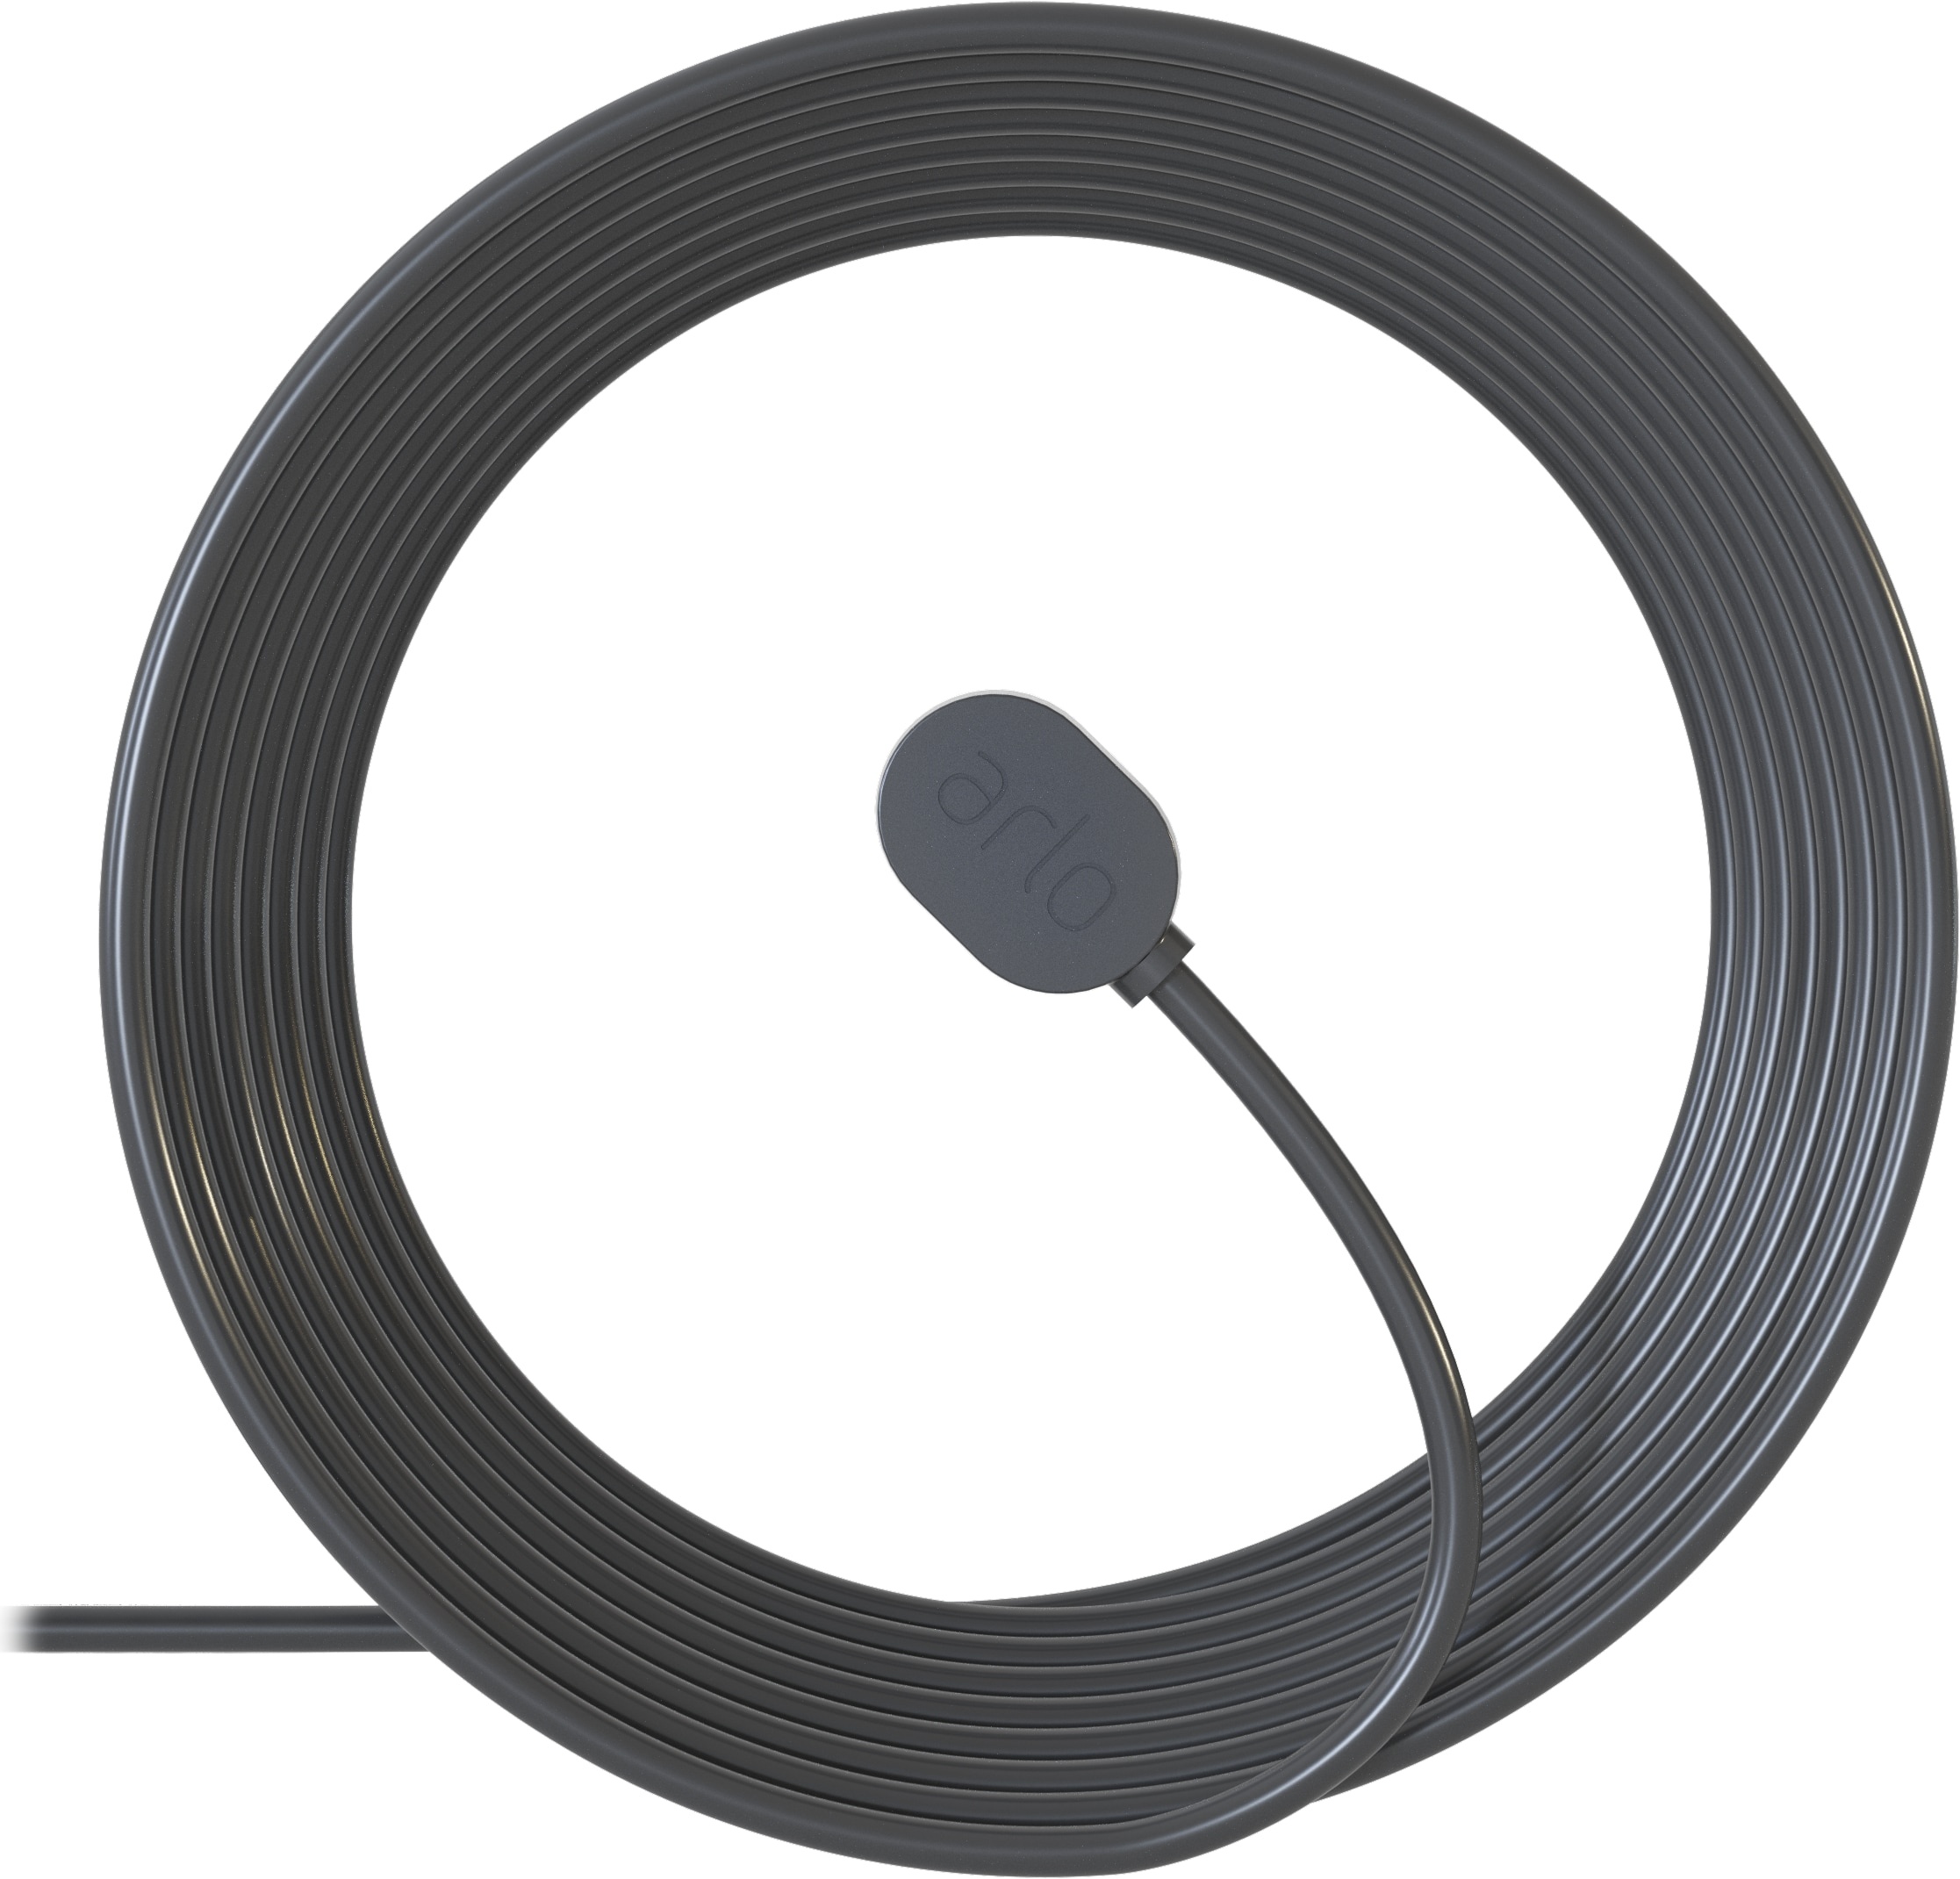 Arlo Arlo magnetisches Ladekabel, außen 7.6m schwarz (Netzwerkkamera Zubehör, Stromkabel), Netzwerkkamera Zubehör